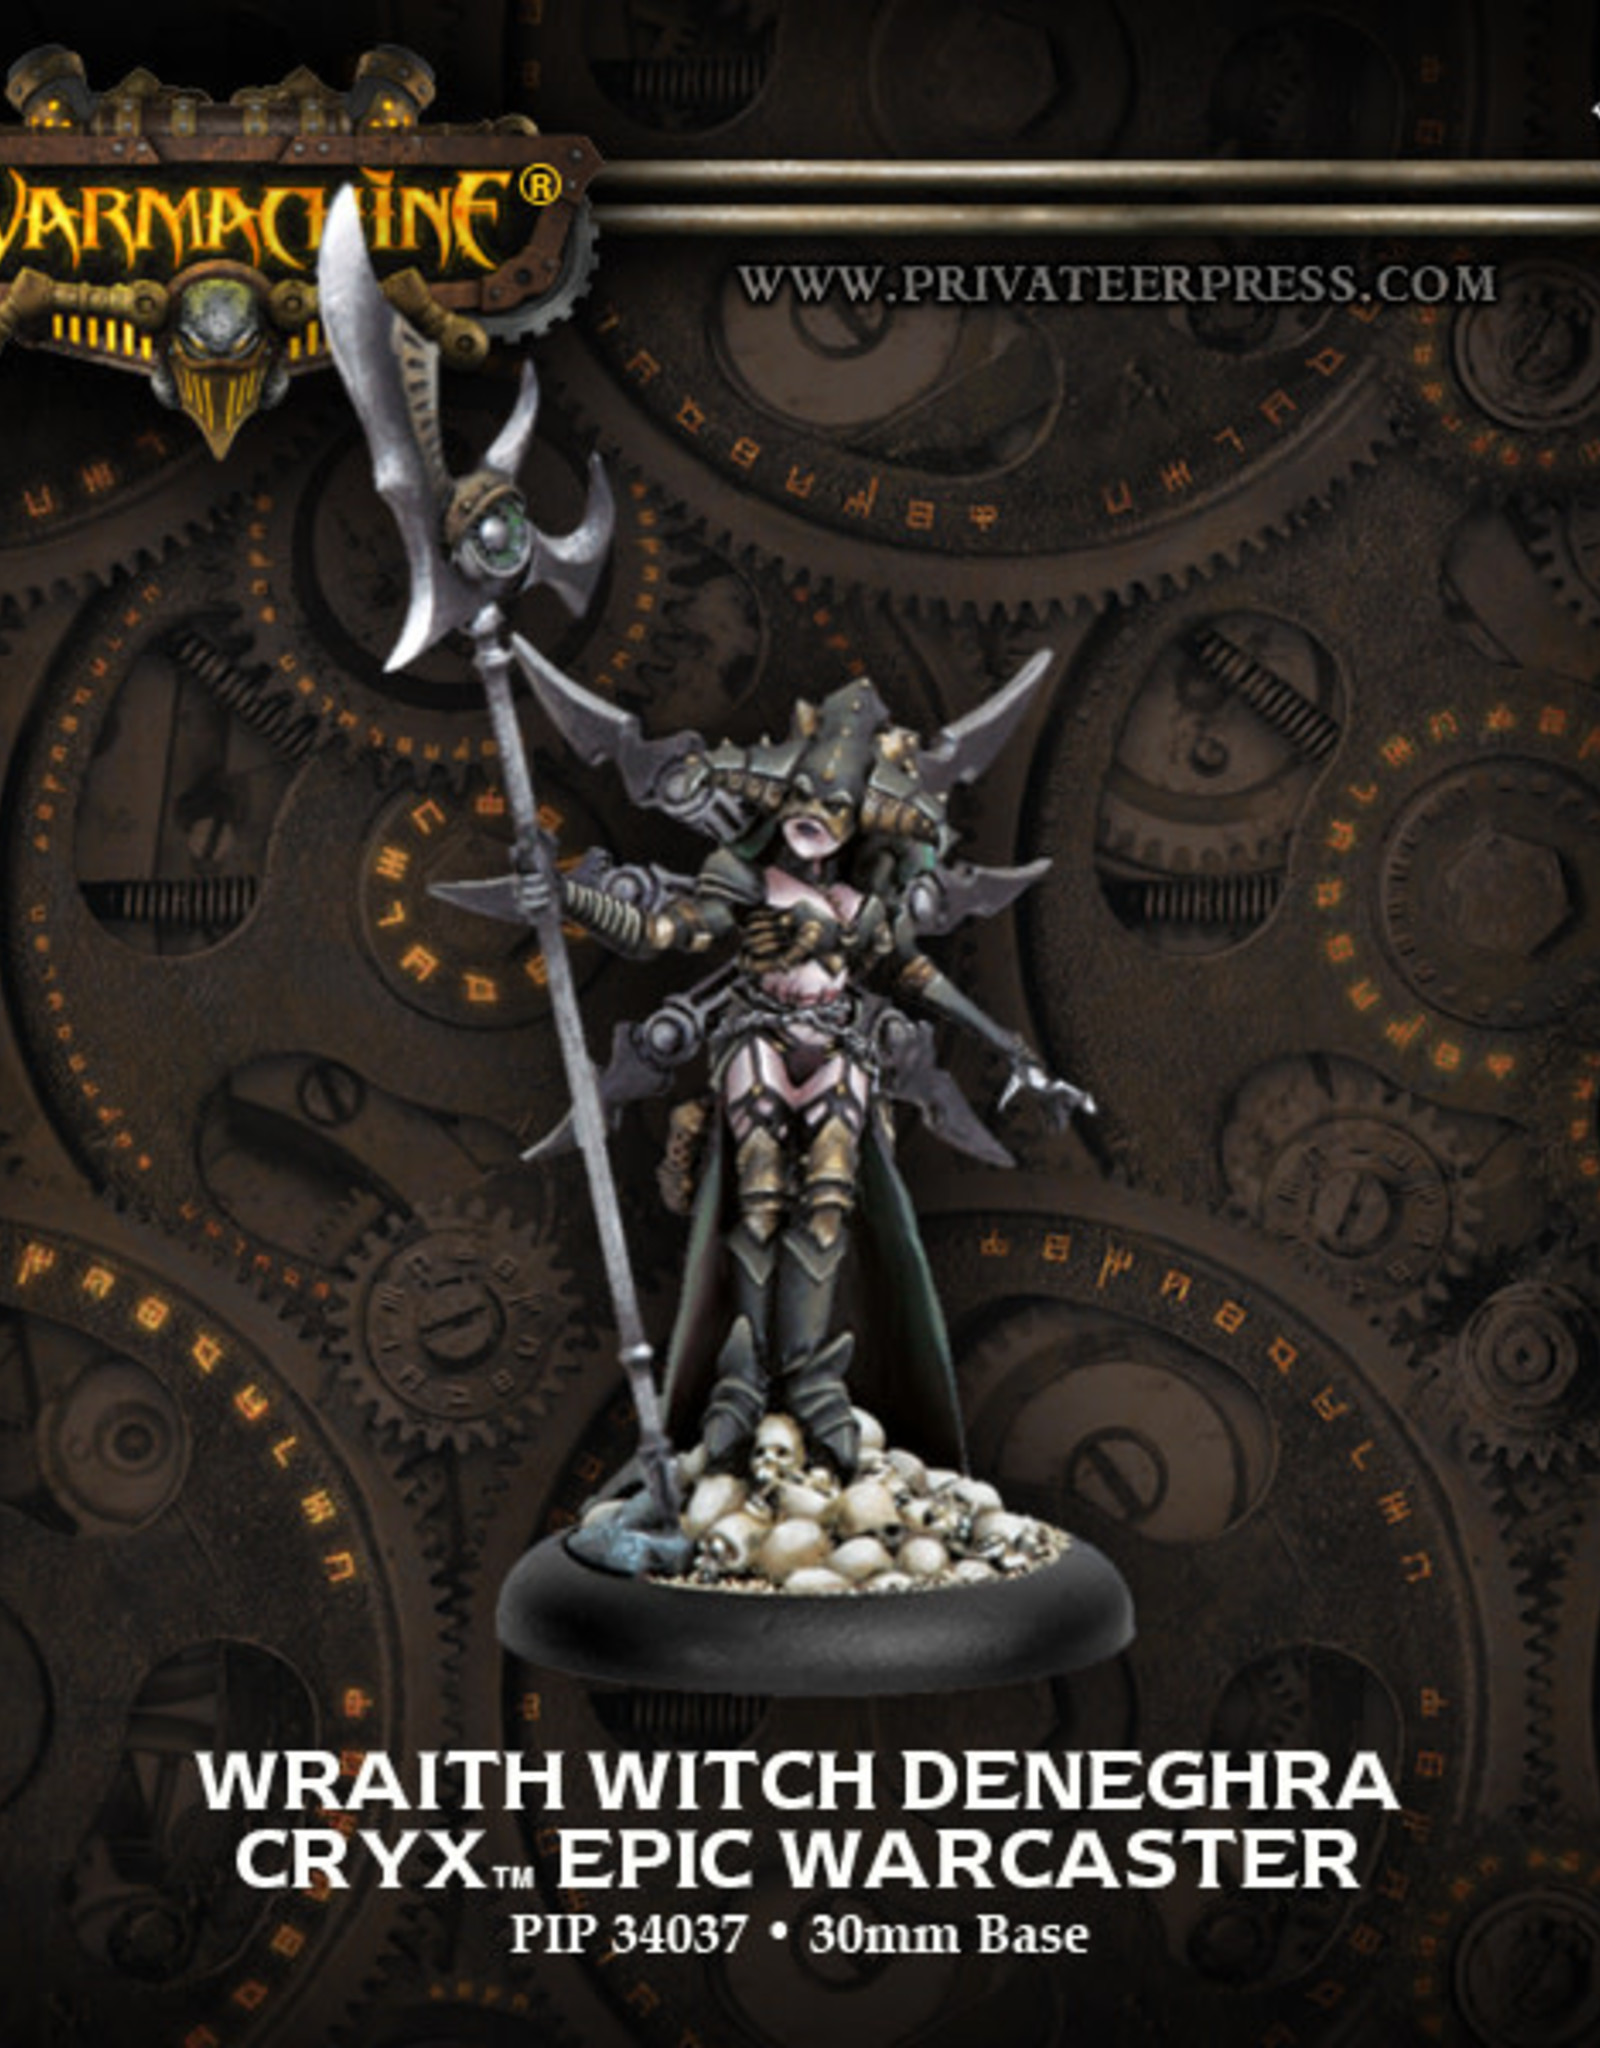 Warmachine Cryx - Wraith Witch Deneghra